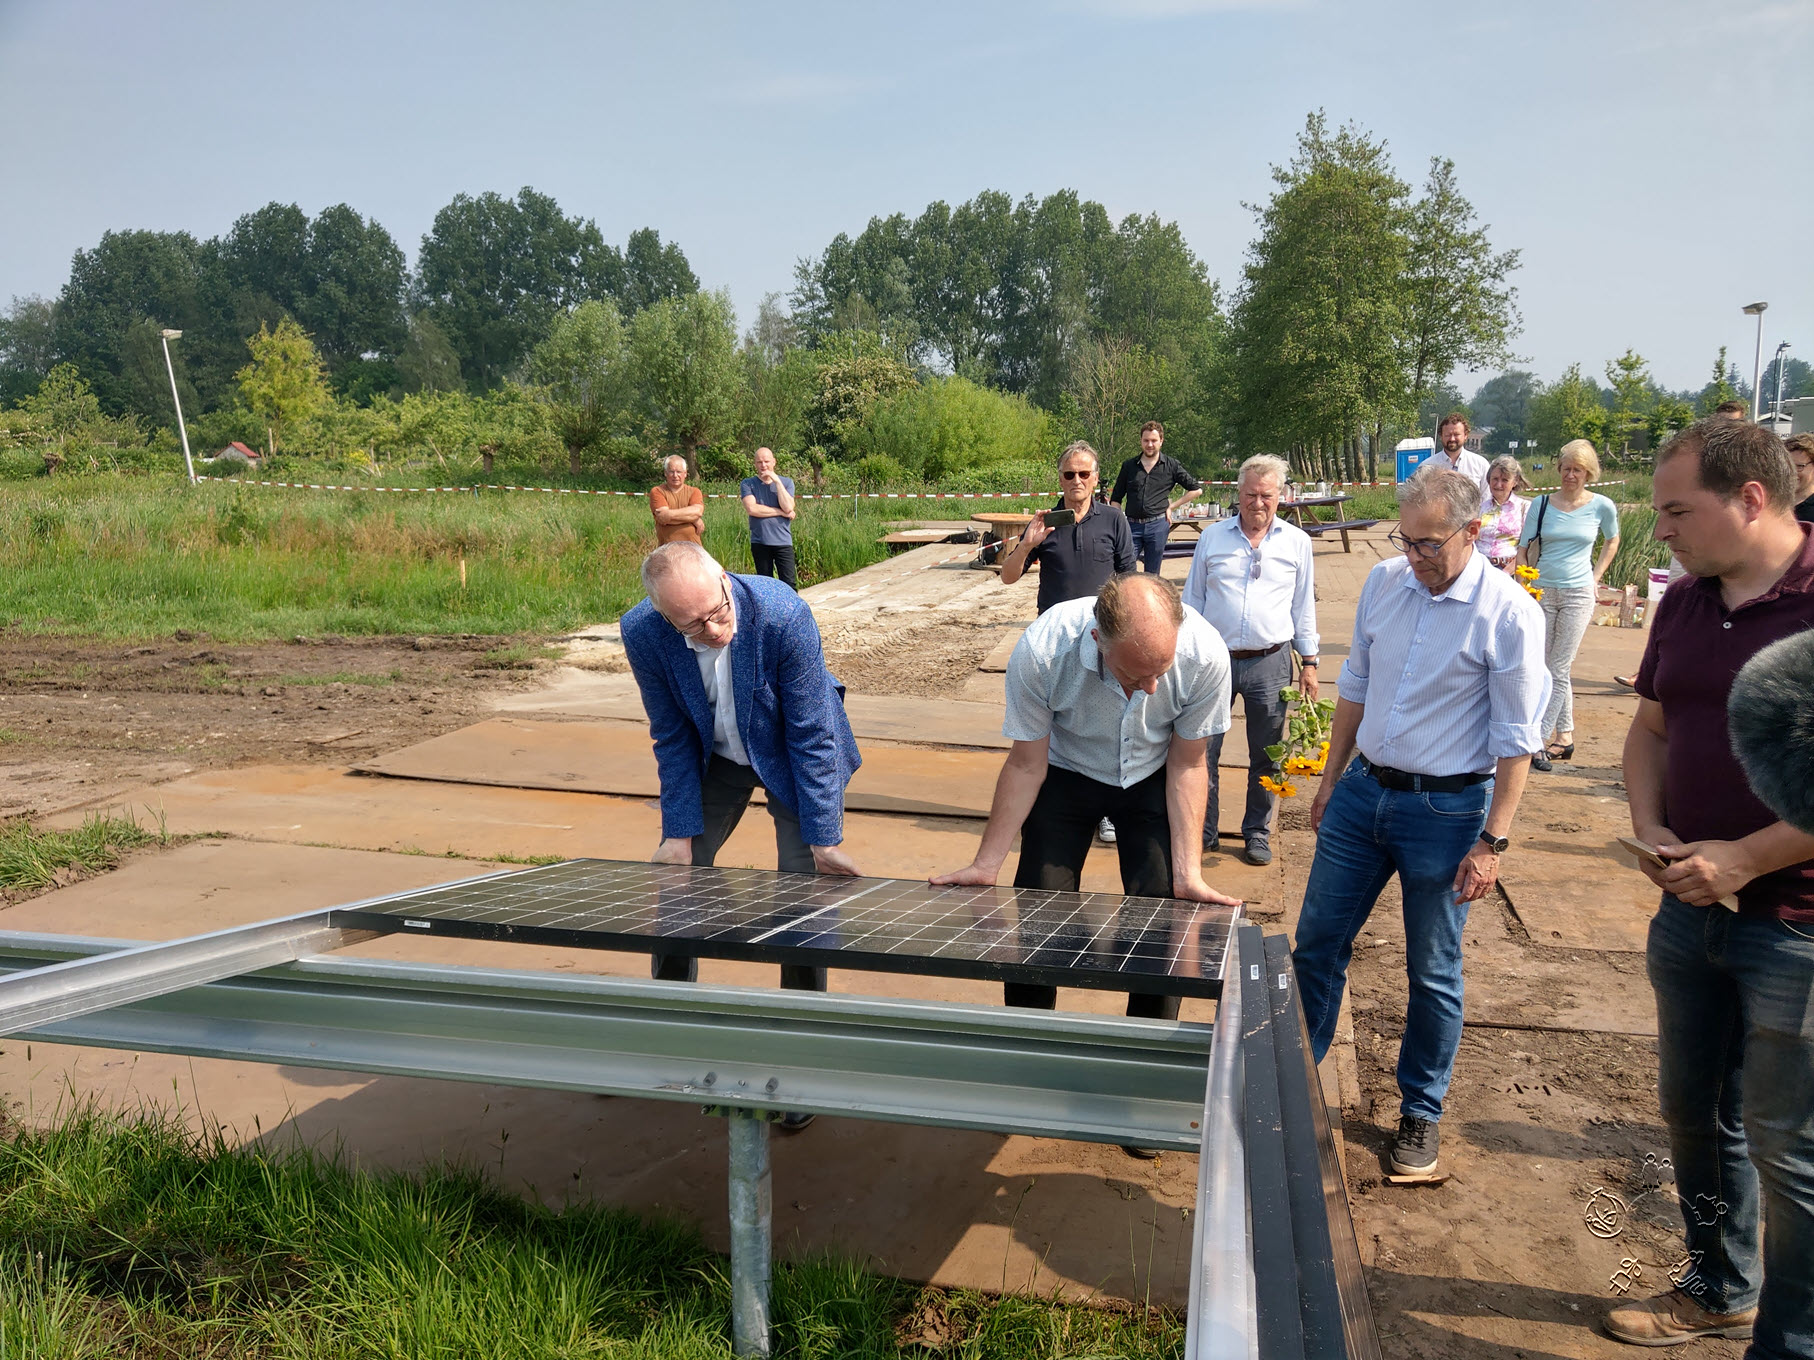 Eerste zonnepaneel is gelegd voor Polycultuur Zonnepark De Mikkelhorst